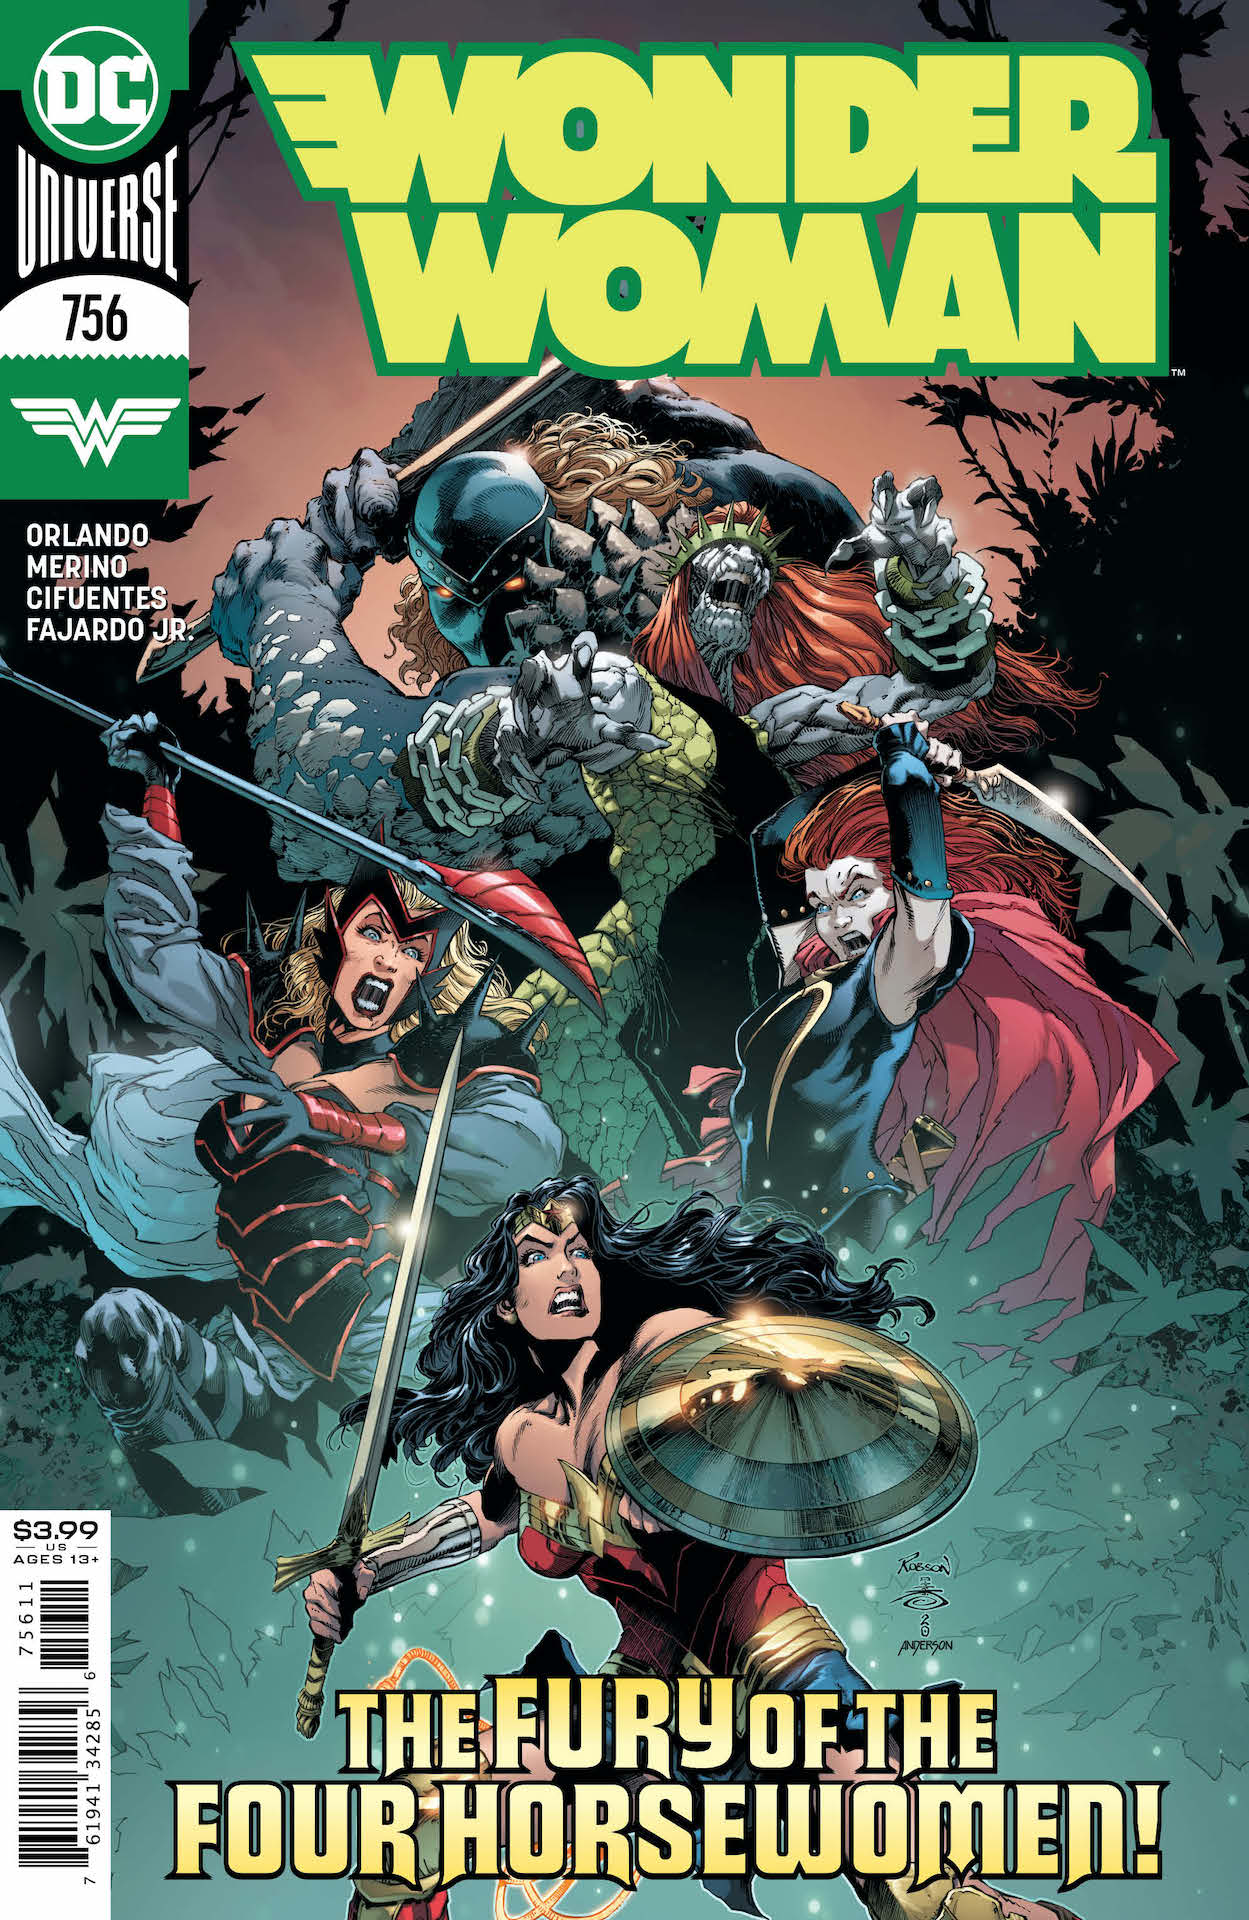 DC Preview: Wonder Woman #756